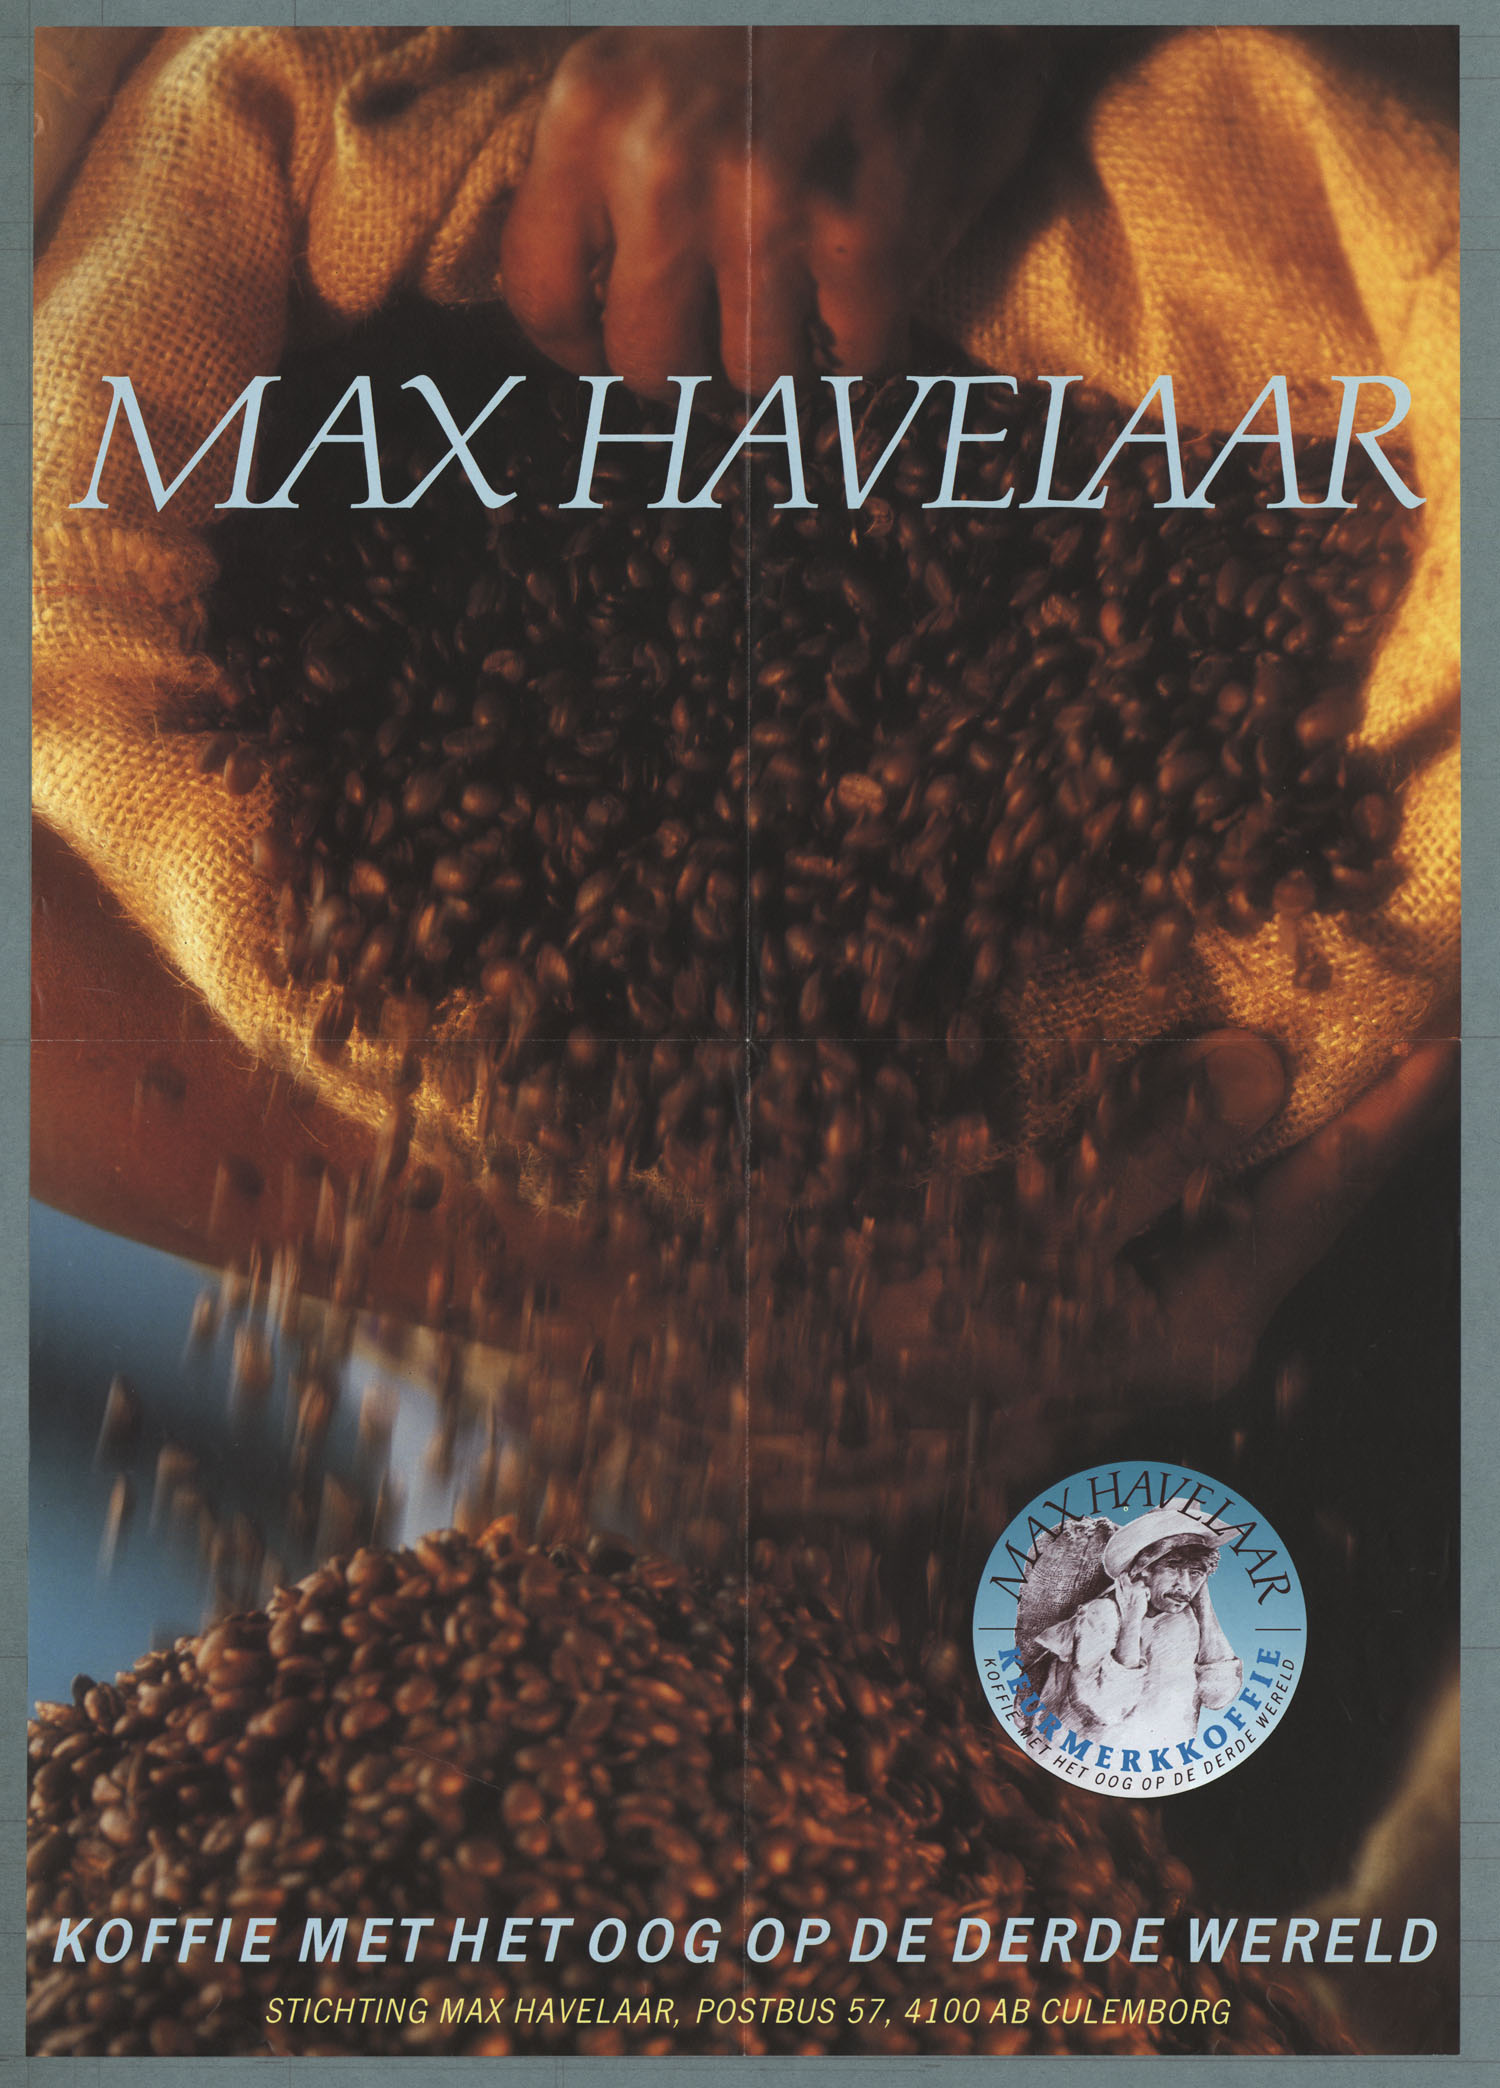 Reclame voor koffie met het keurmerk van Max Havelaar, jaren 1980. Beeldbank het Geheugen.